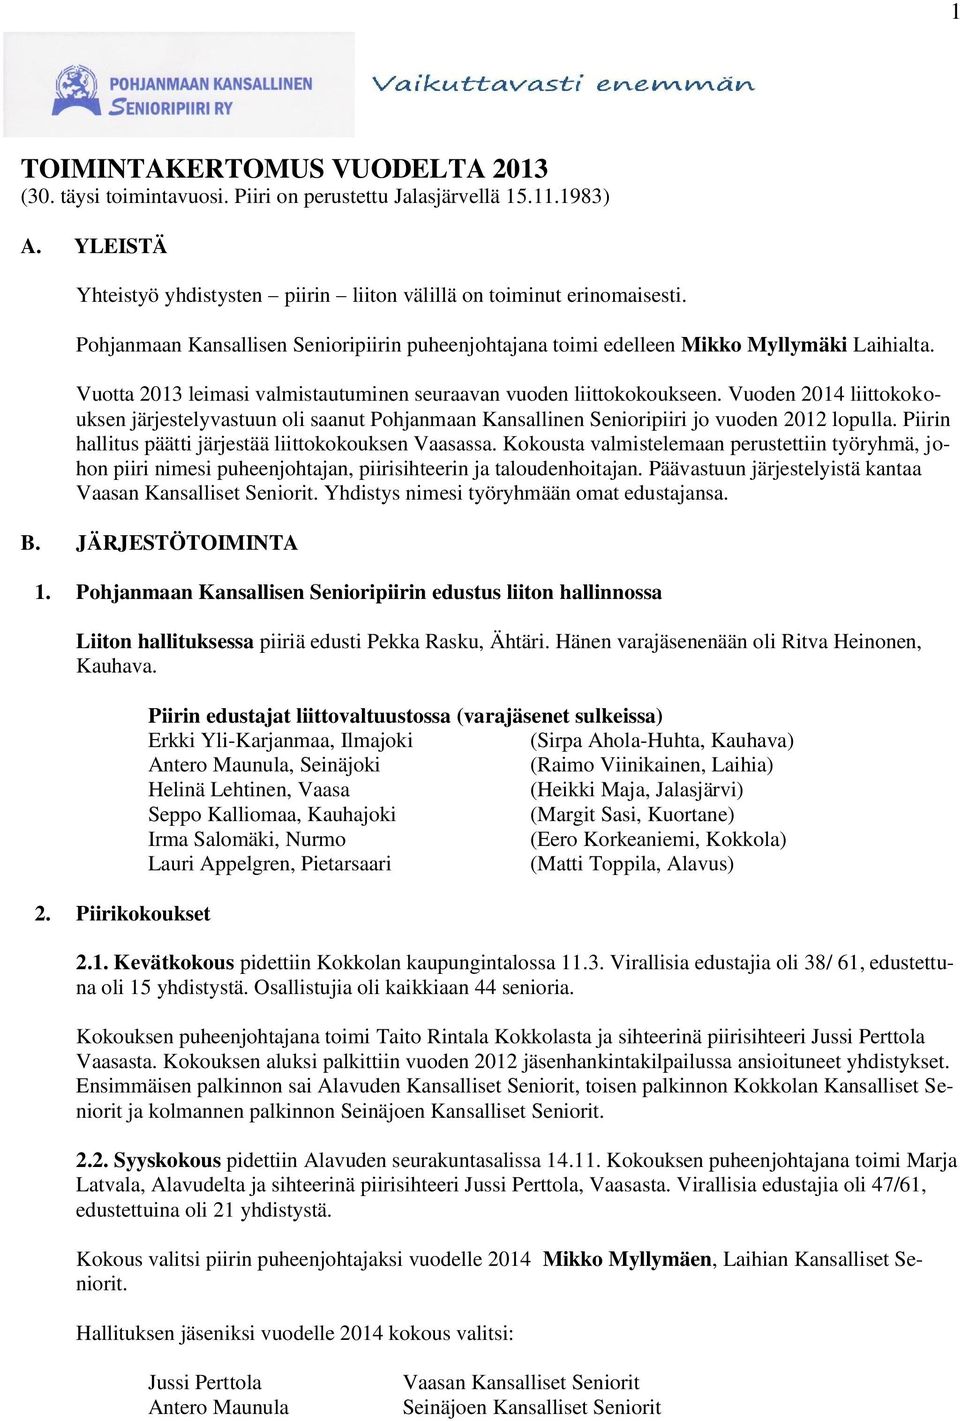 Vuoden 2014 liittokokouksen järjestelyvastuun oli saanut Pohjanmaan Kansallinen Senioripiiri jo vuoden 2012 lopulla. Piirin hallitus päätti järjestää liittokokouksen Vaasassa.